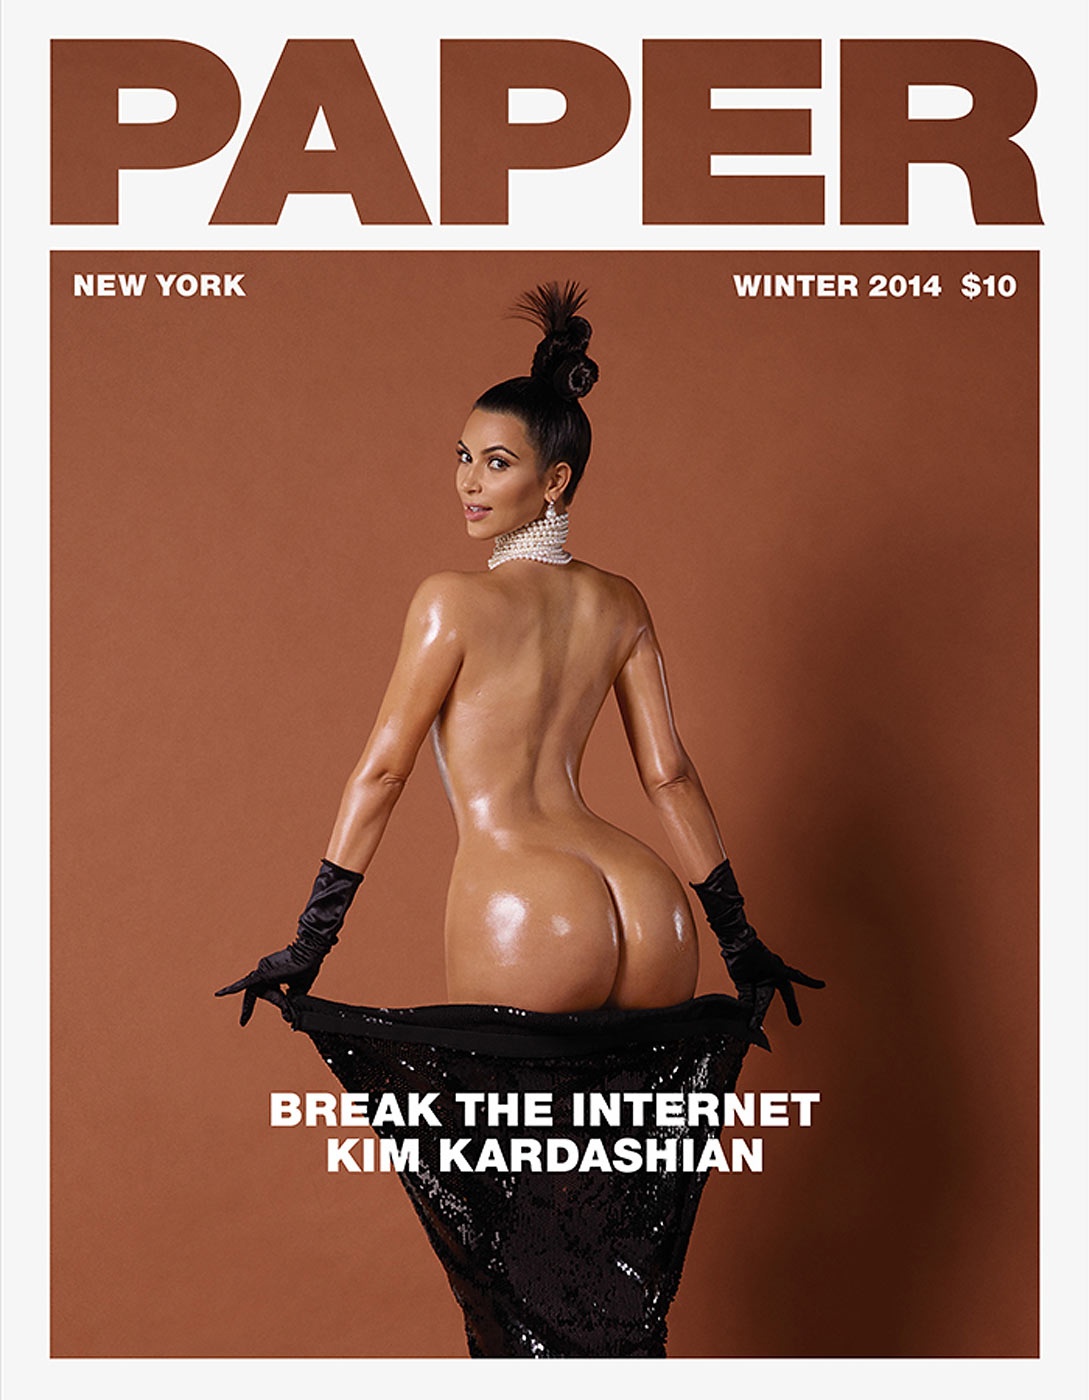 M kardashian porn movie - Real Naked Girls